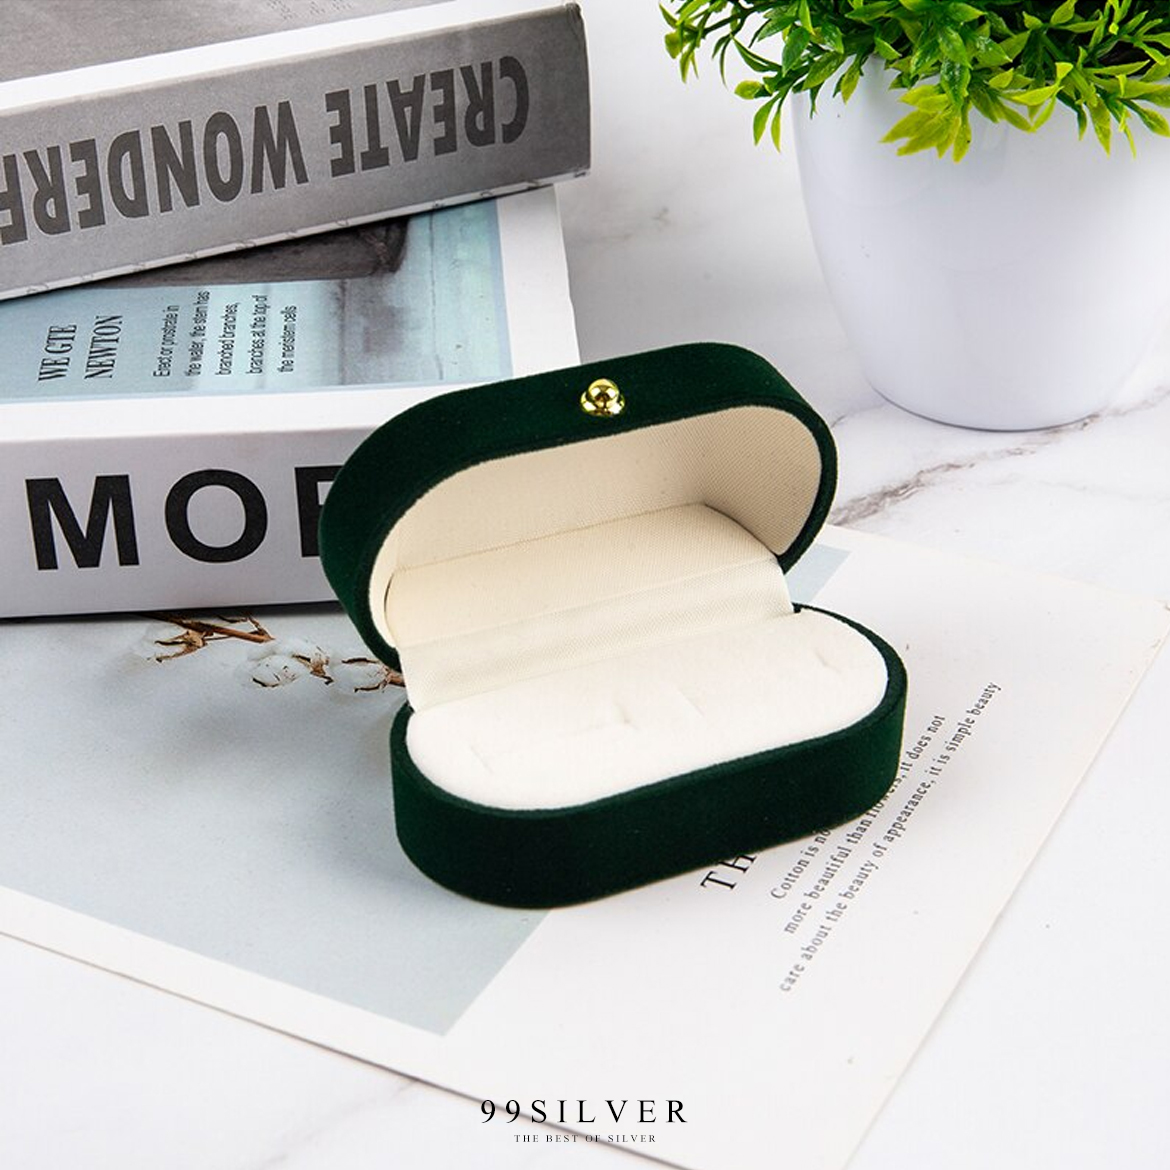 กล่องใส่แหวนกำมะหยี่สีเขียวทรงโค้งยาว ฝาแข็ง ใส่แหวนได้ 2 วงเรียบหรูคลาสสิค